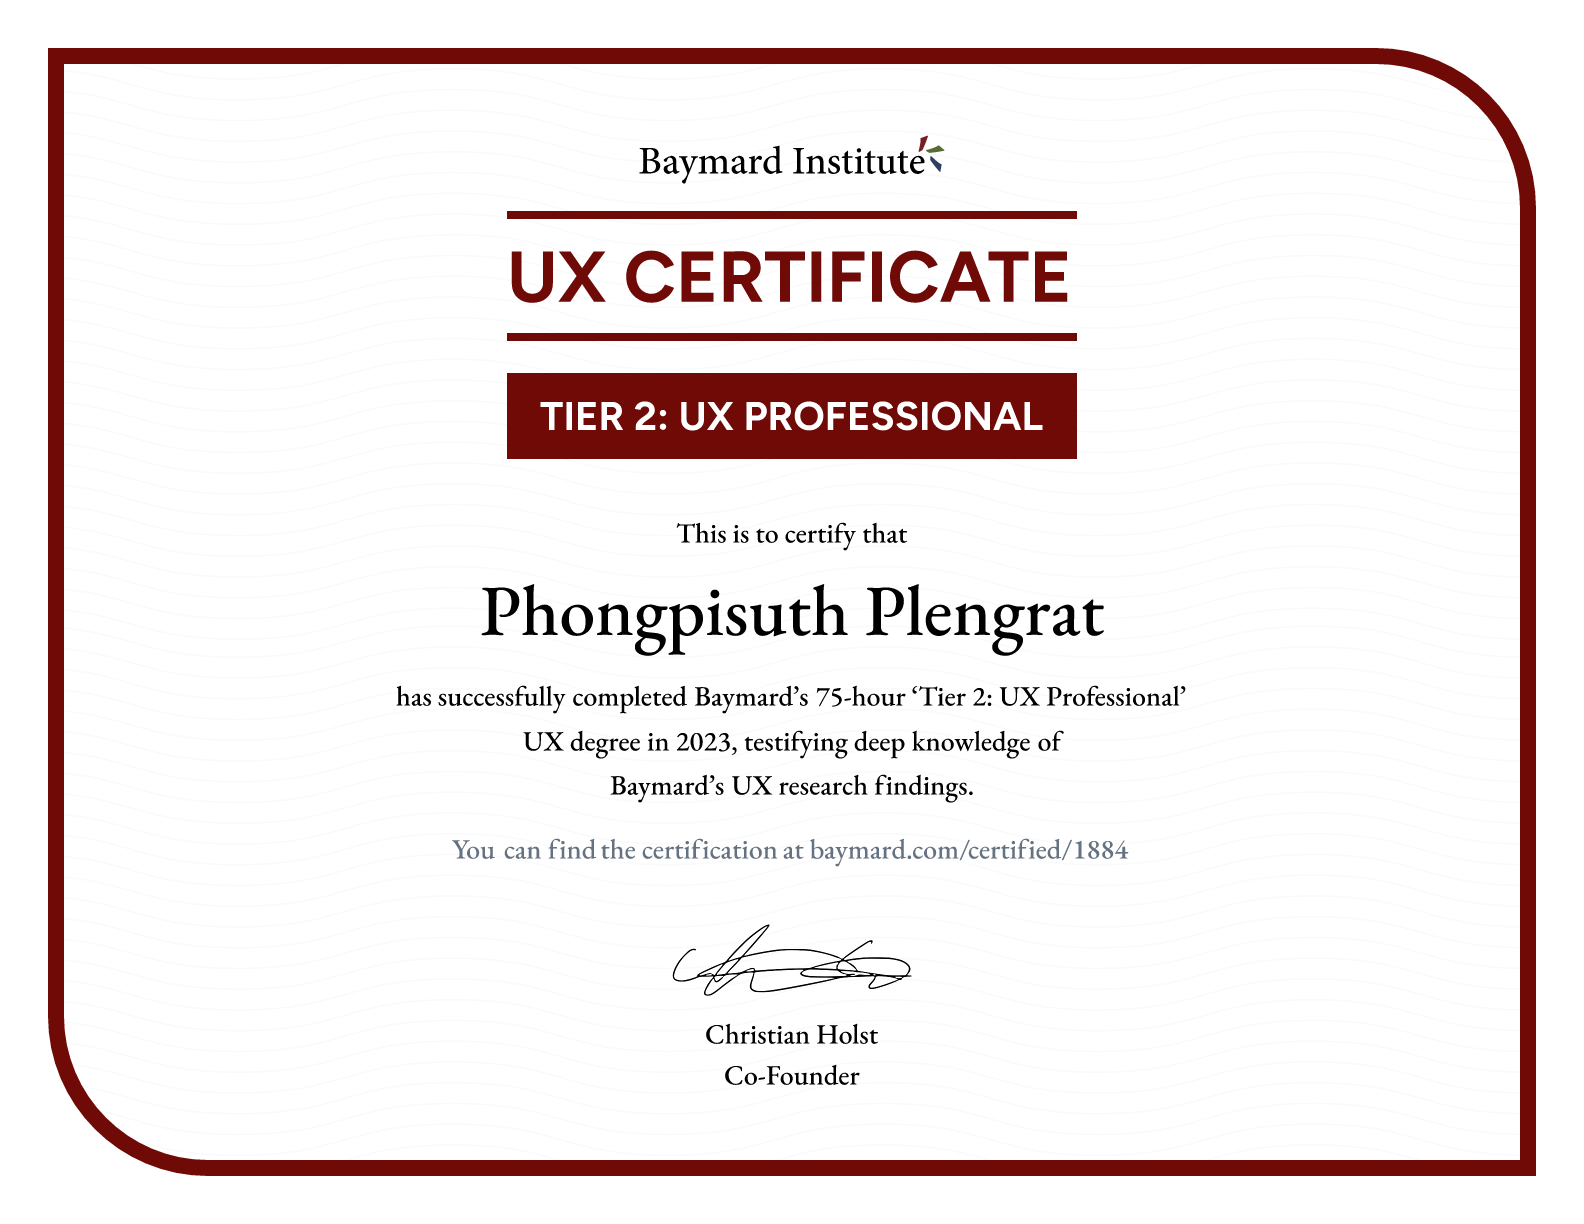 Phongpisuth Plengrat’s certificate